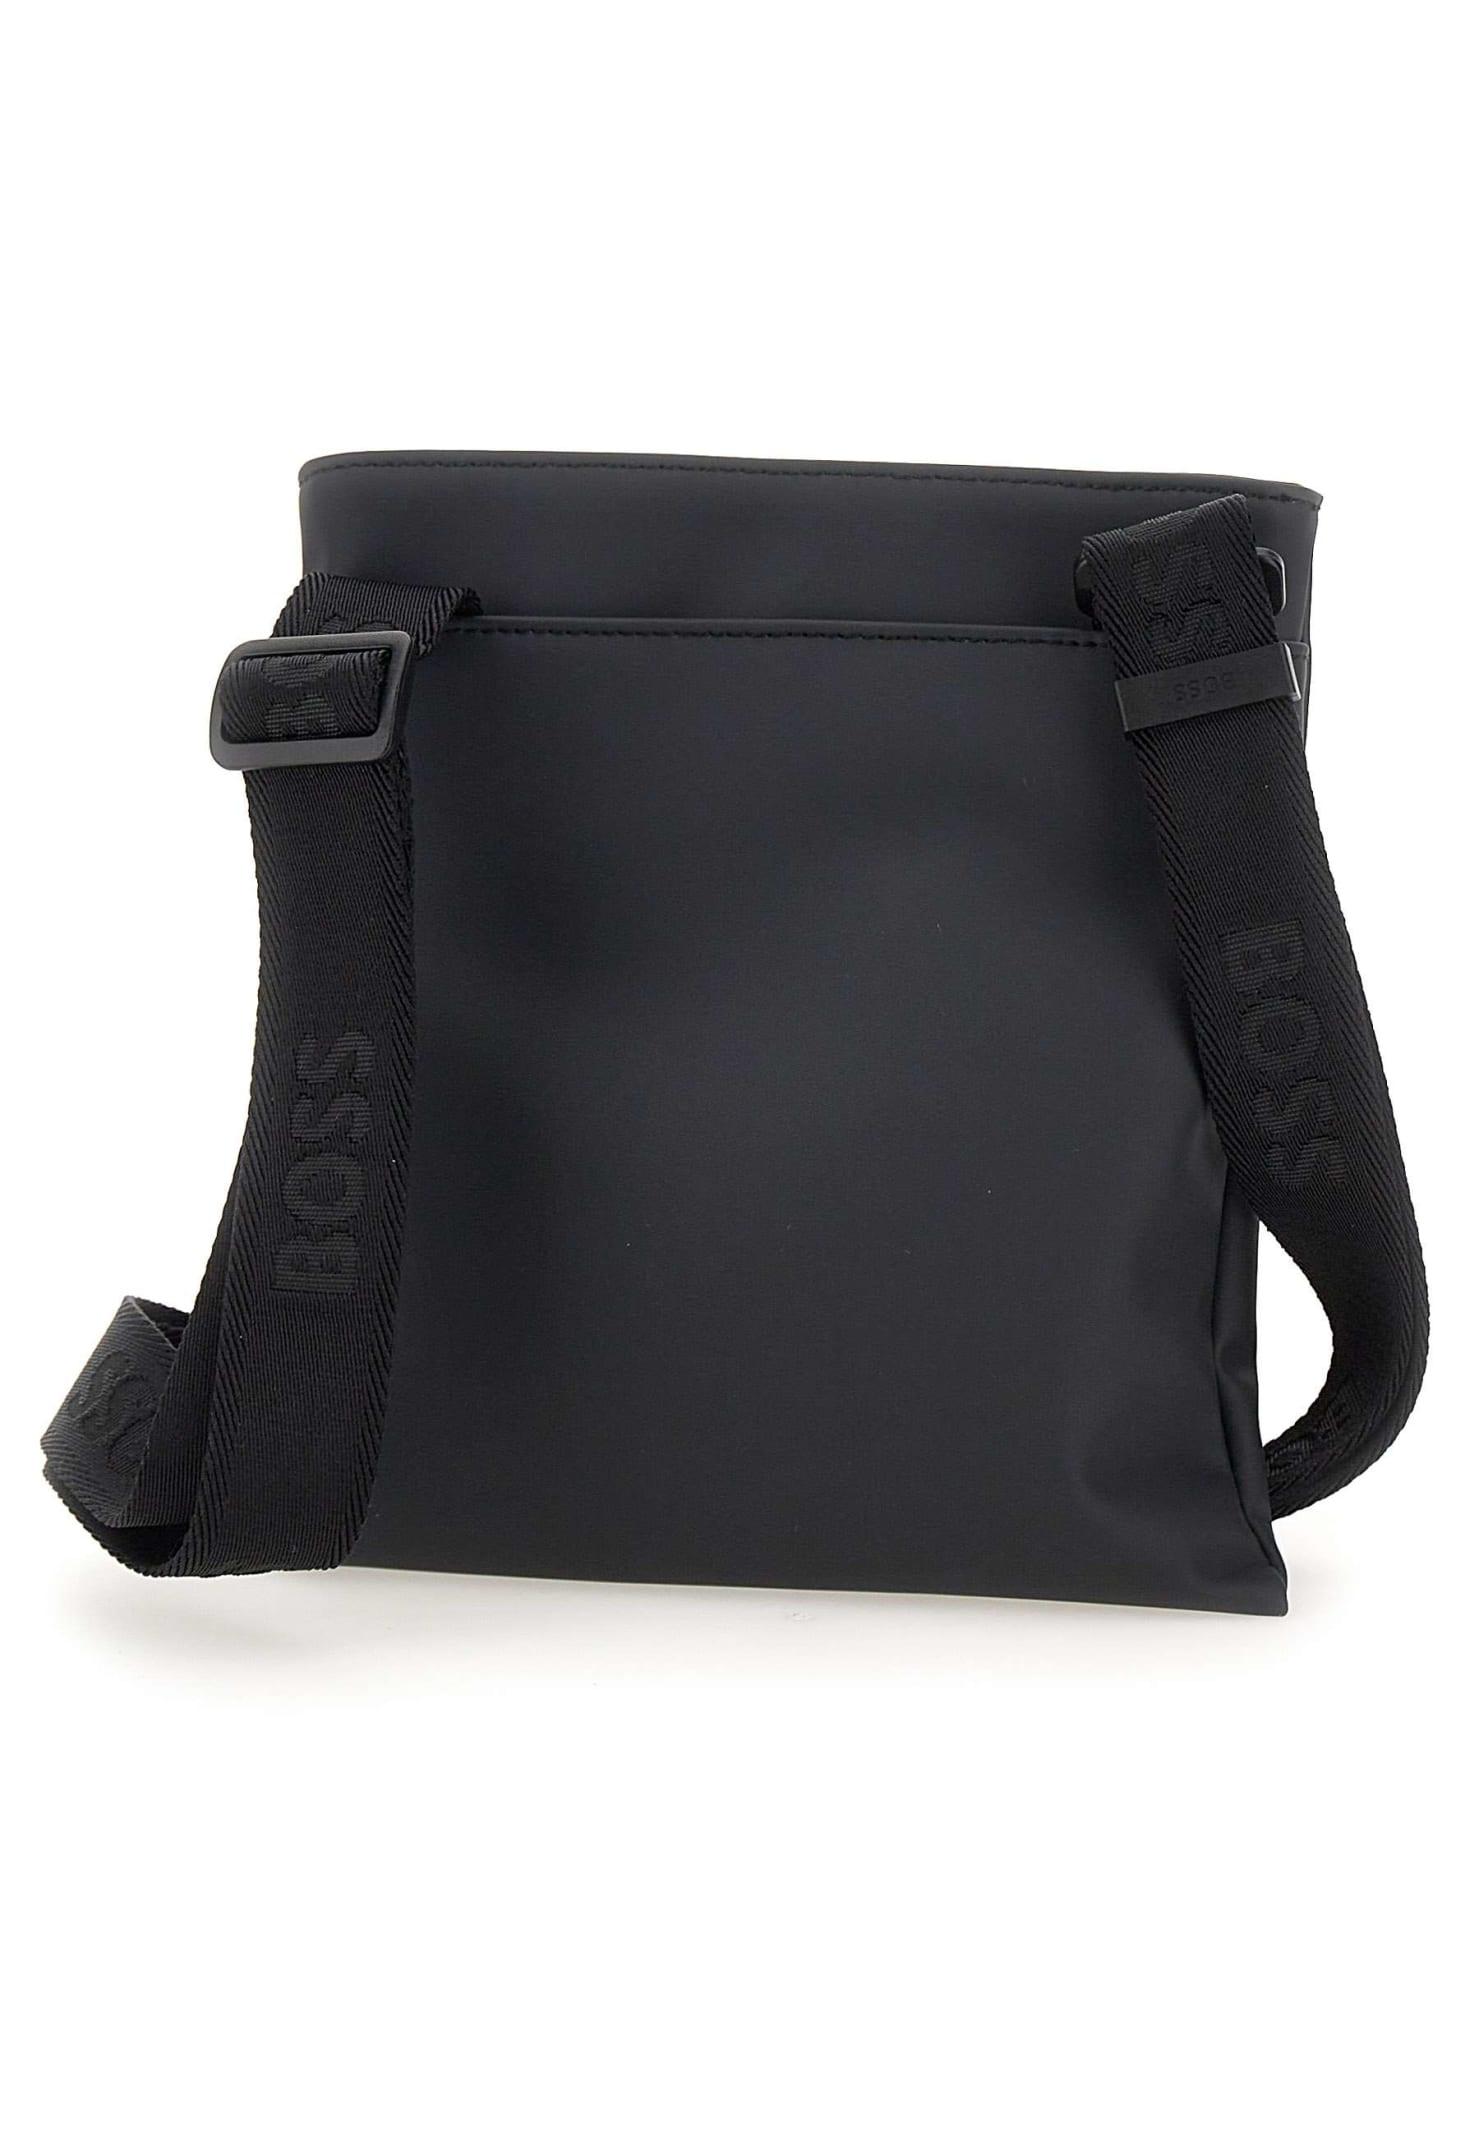 BOSS by HUGO BOSS Goodwin Envelope Bag in Black for Men | Lyst